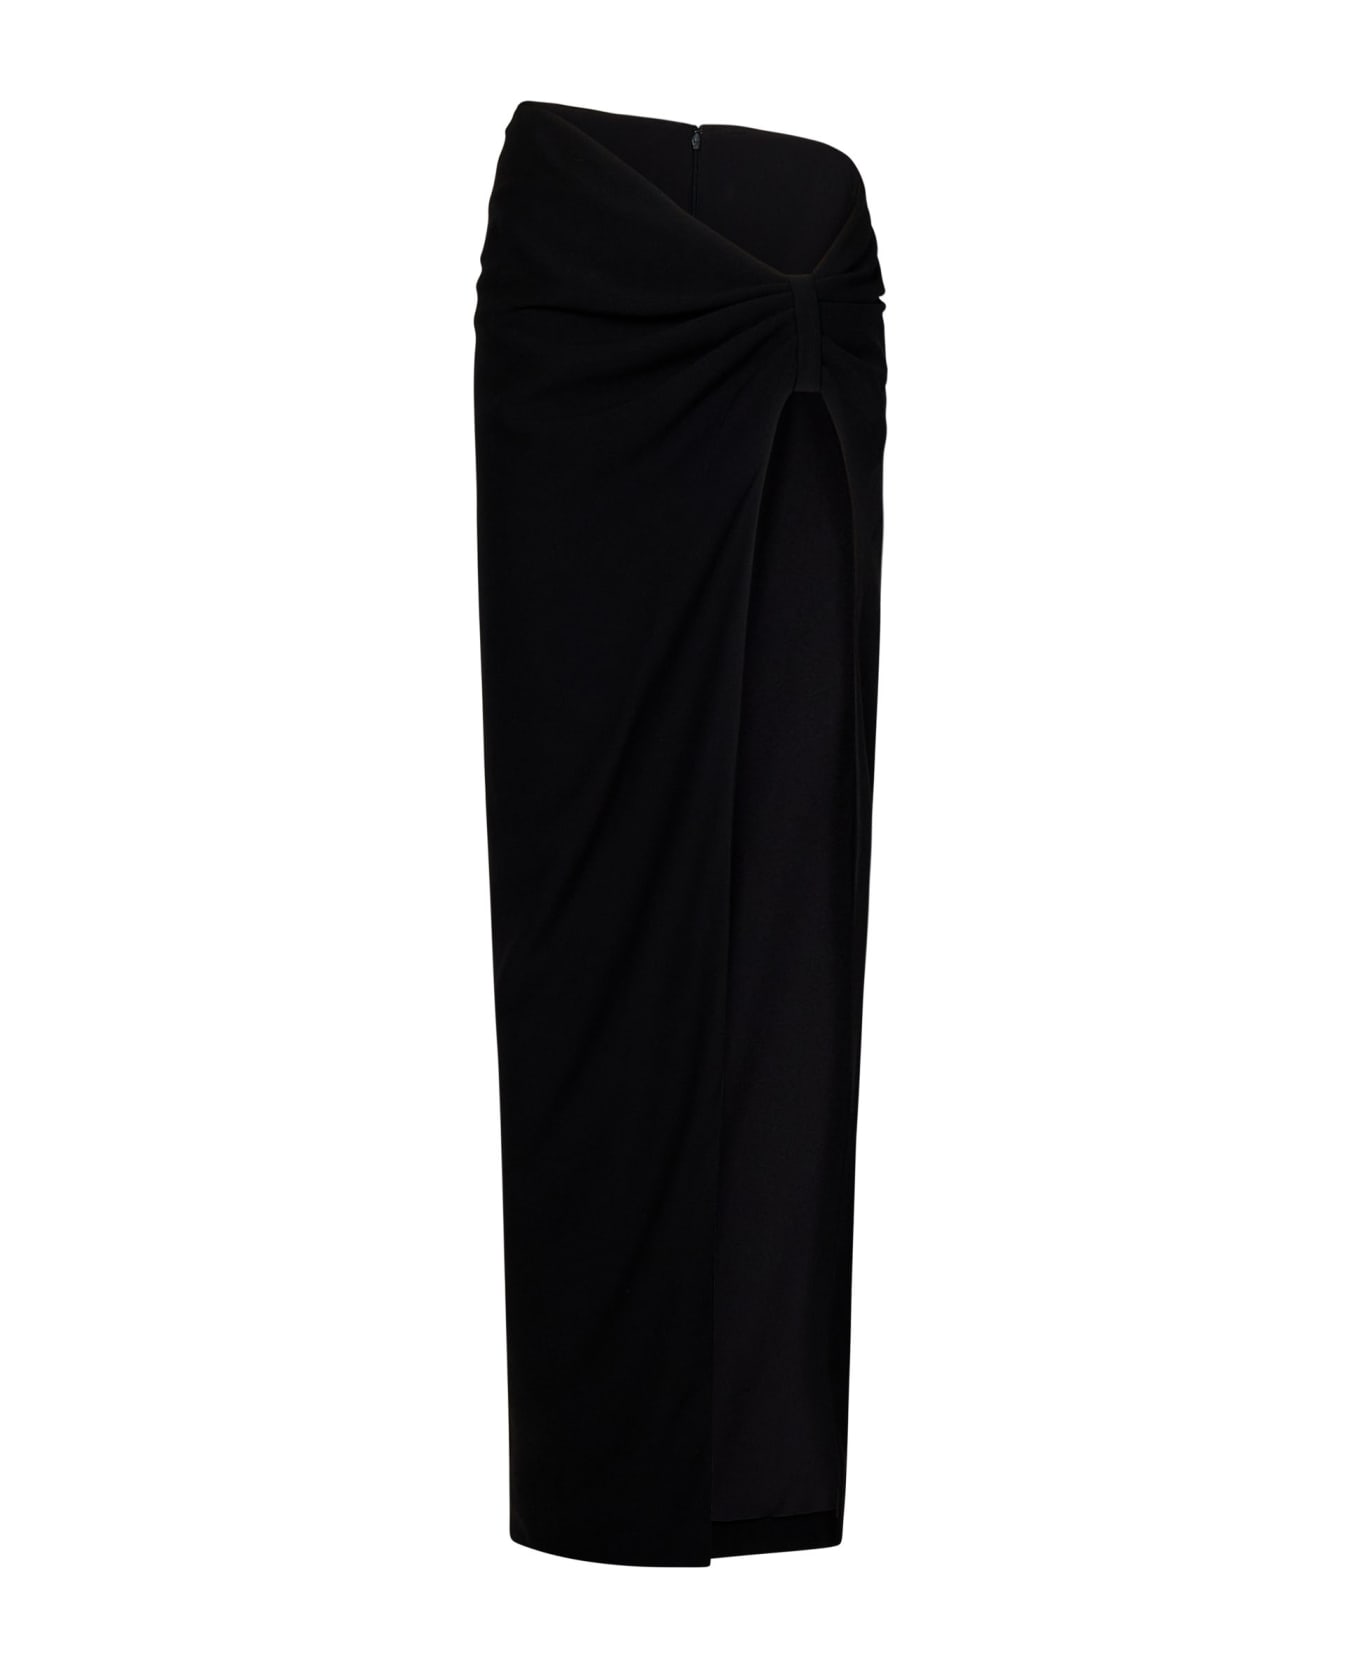 Monot Long Skirt - Black